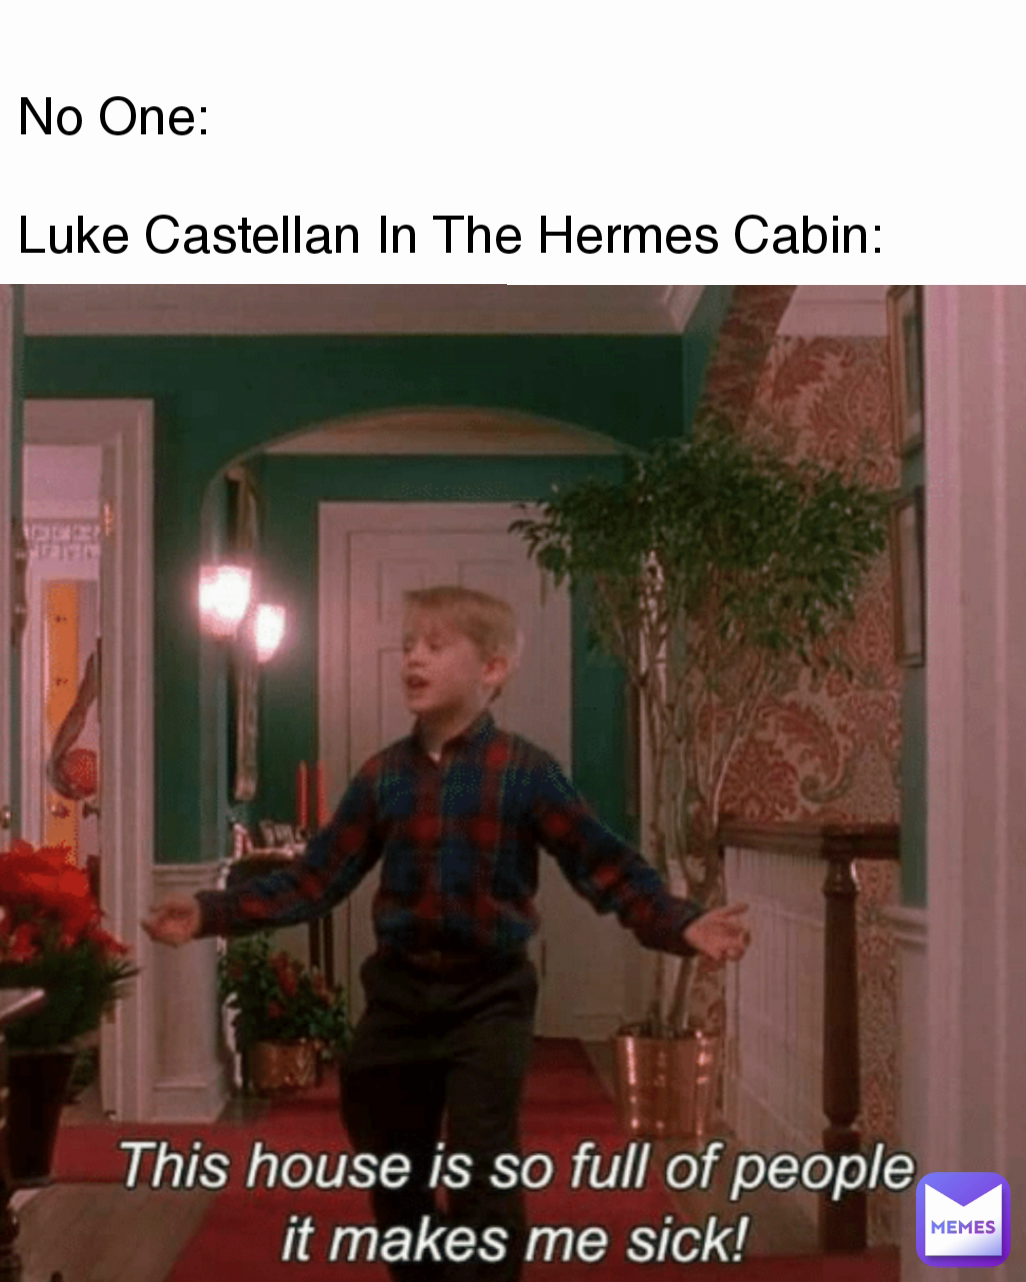 No One: 

Luke Castellan In The Hermes Cabin: